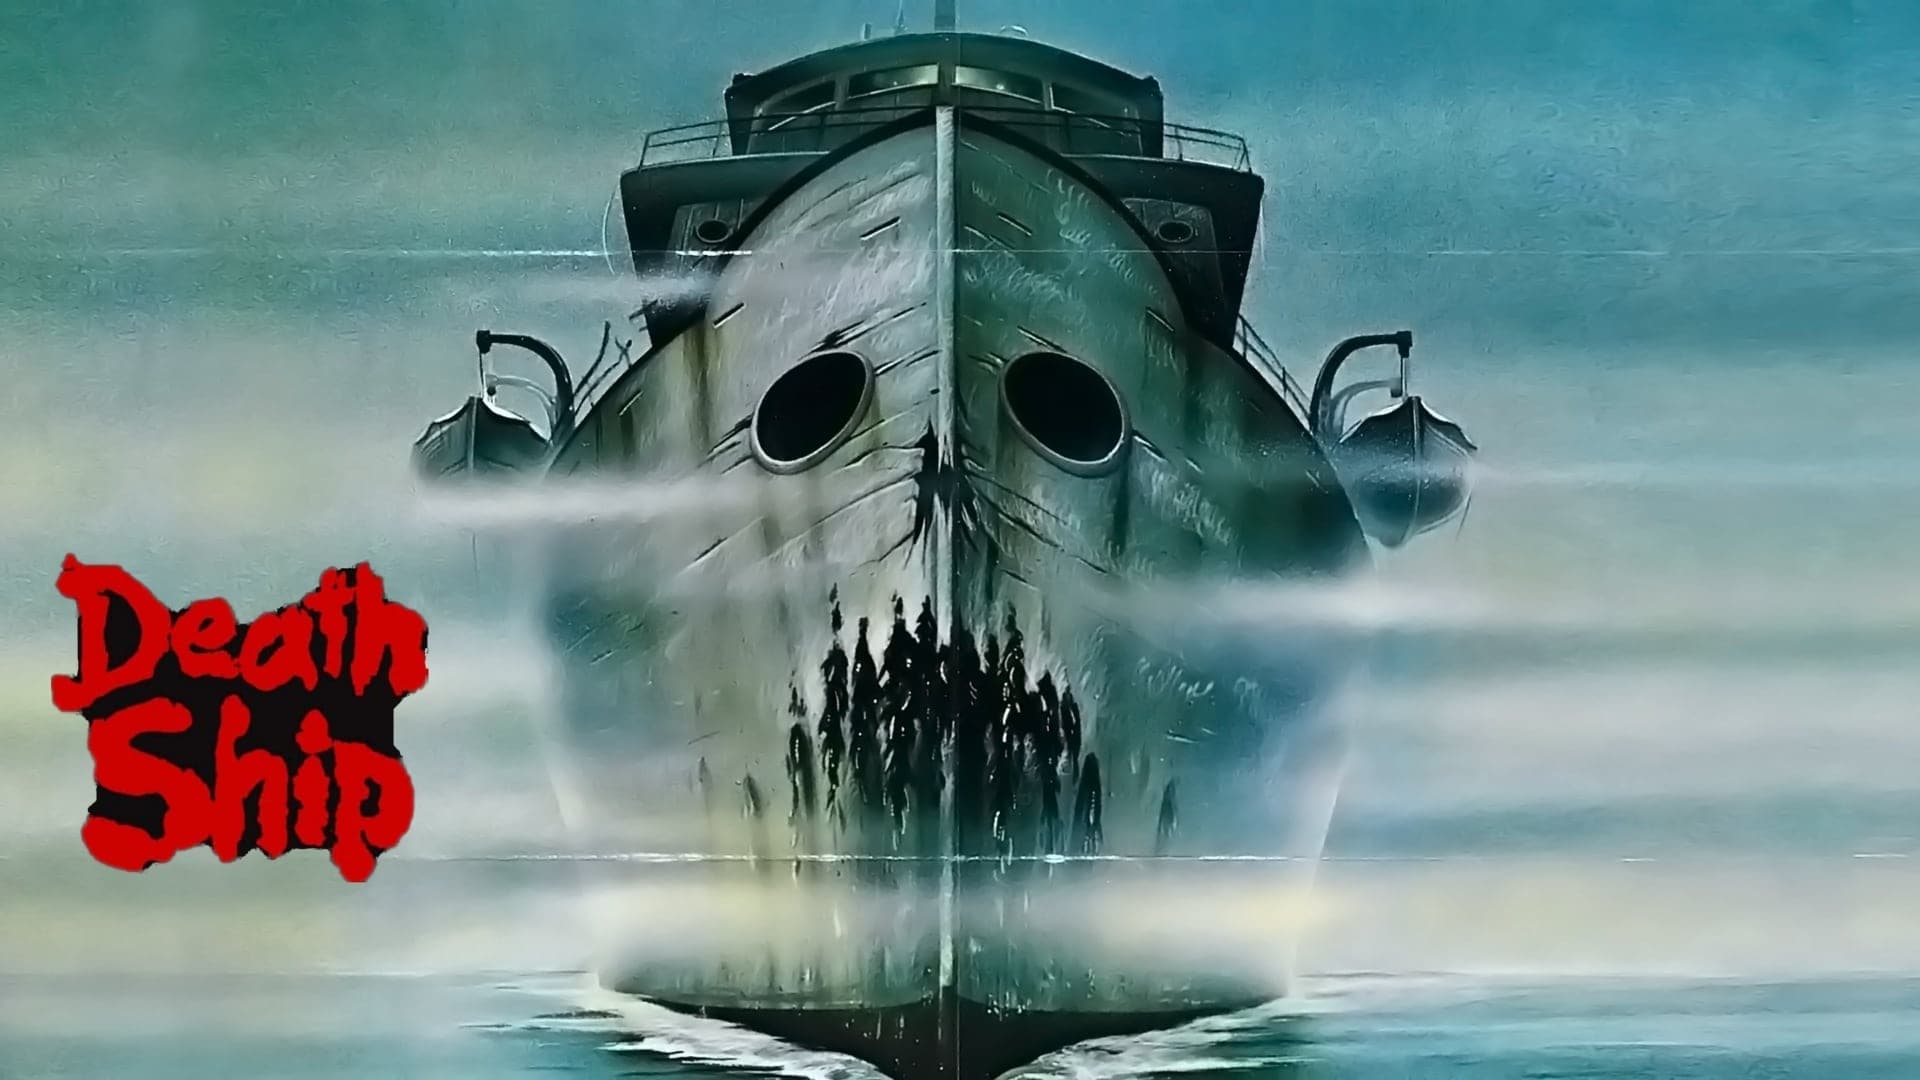 La nave fantasma (1980)